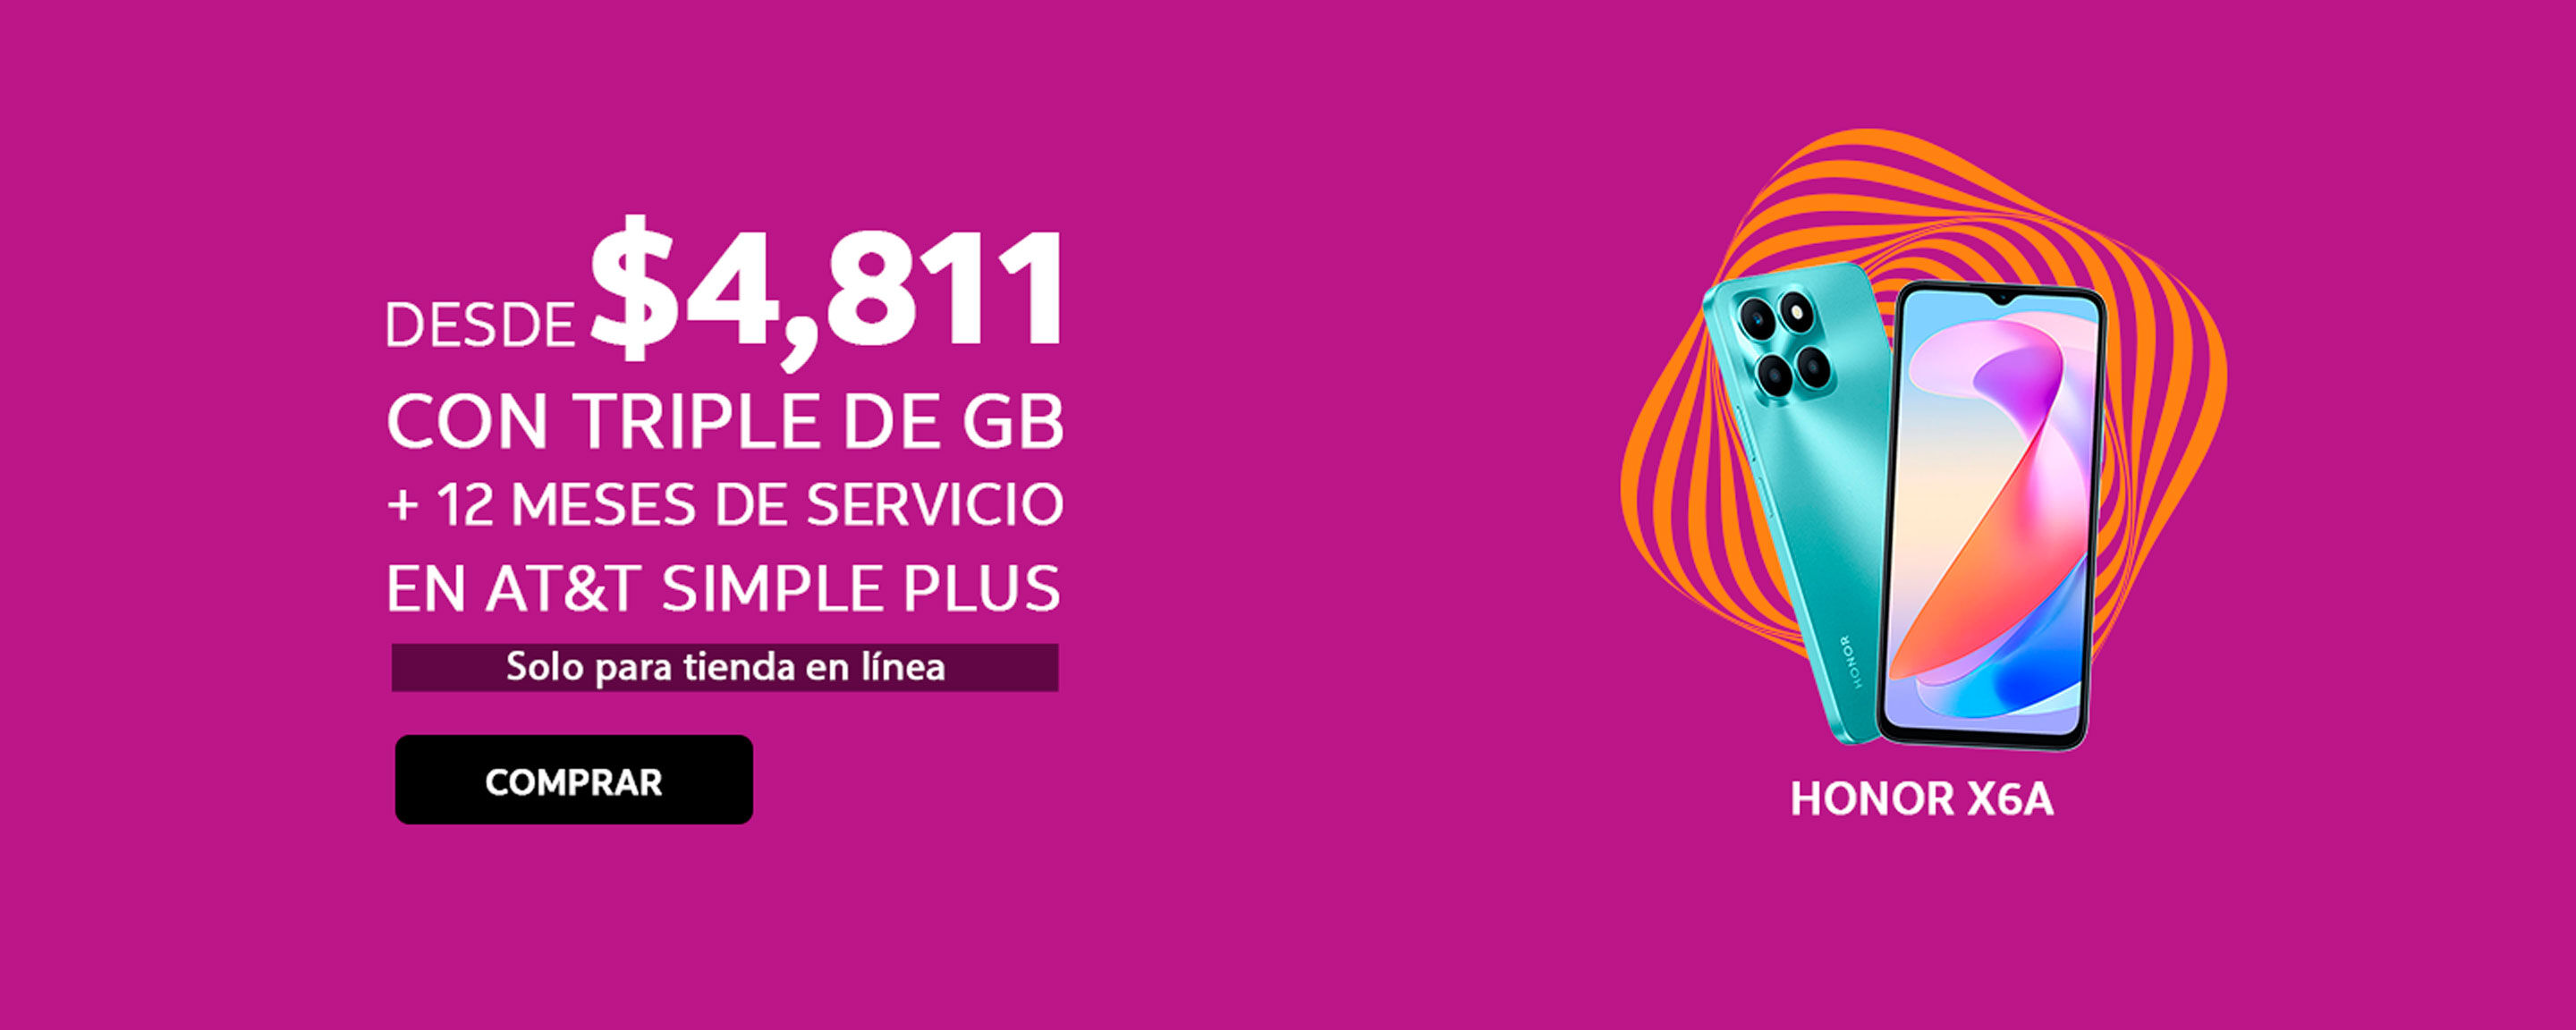 Xiaomi X6A DESDE $ 4, 811 CON TRIPLE DE GB + 12 MESES DE SERVICIO EN AT&T SIMPLE PLUS